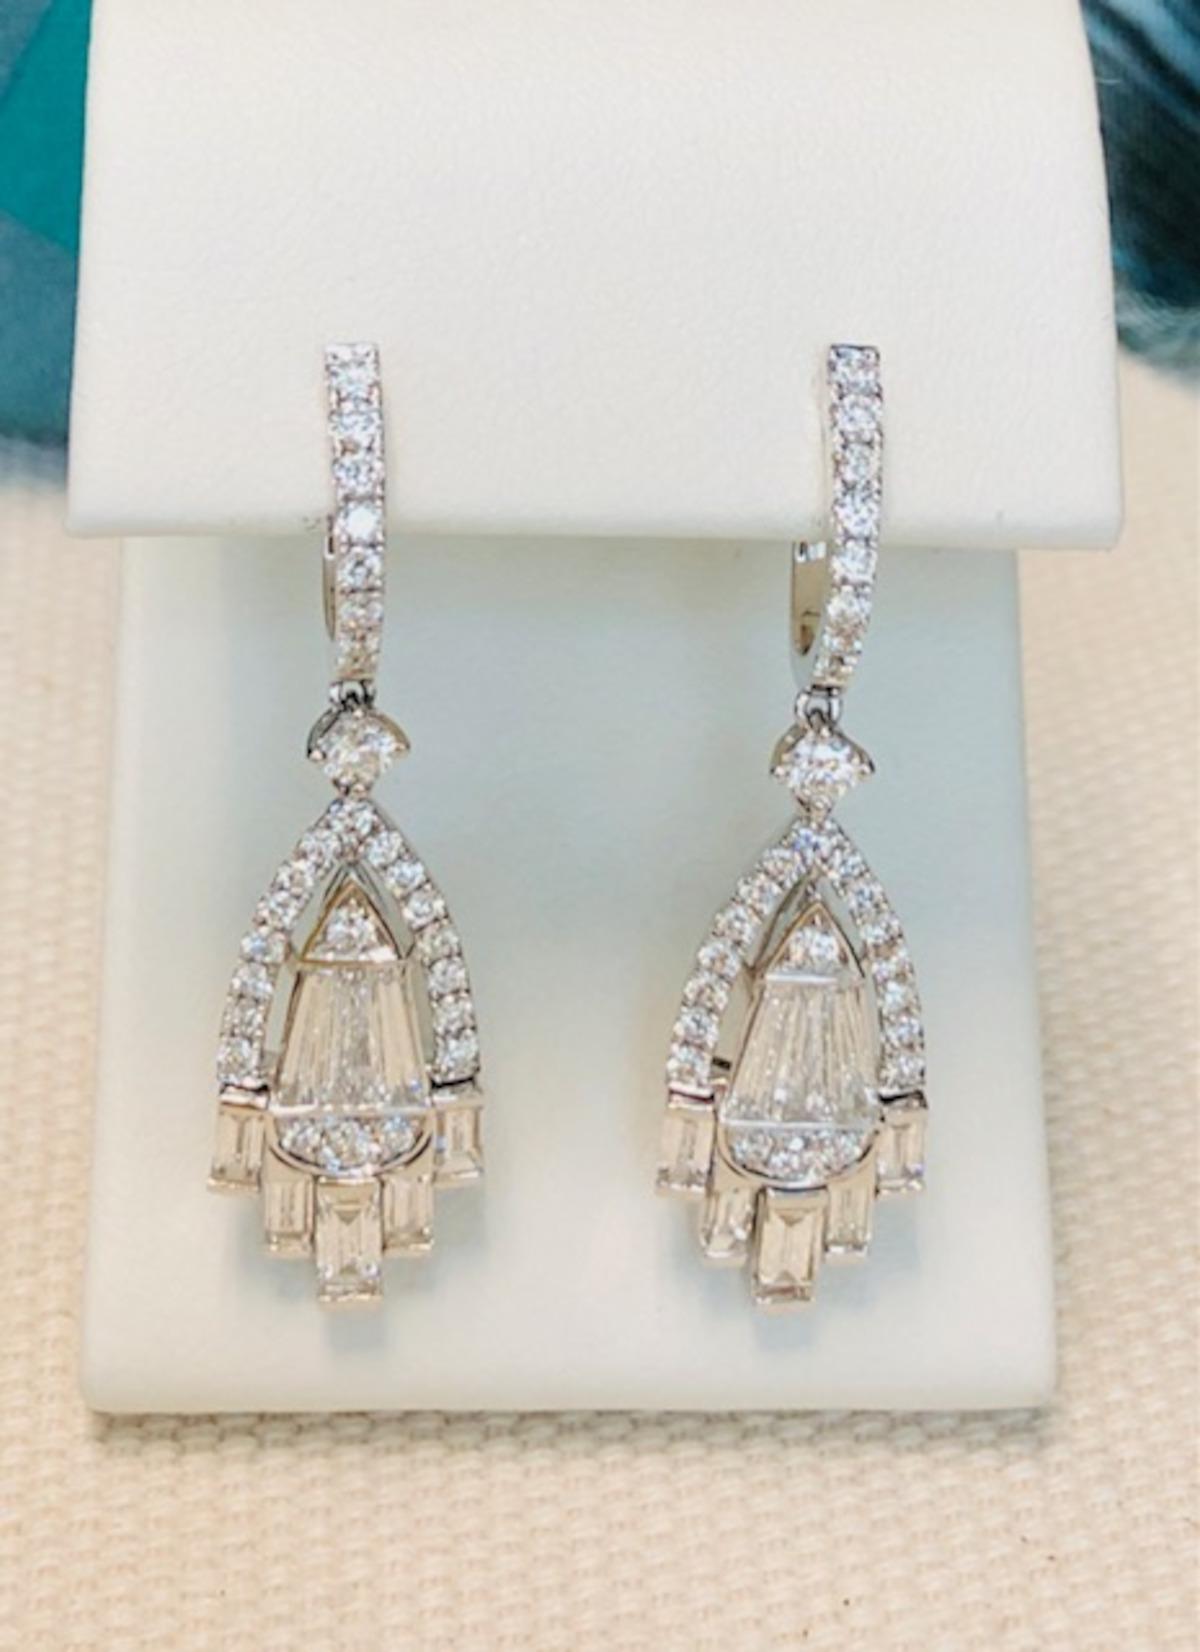 Women's Diamond Baguette Chandelier Earrings in White Gold, 2.56 Carats Total  For Sale